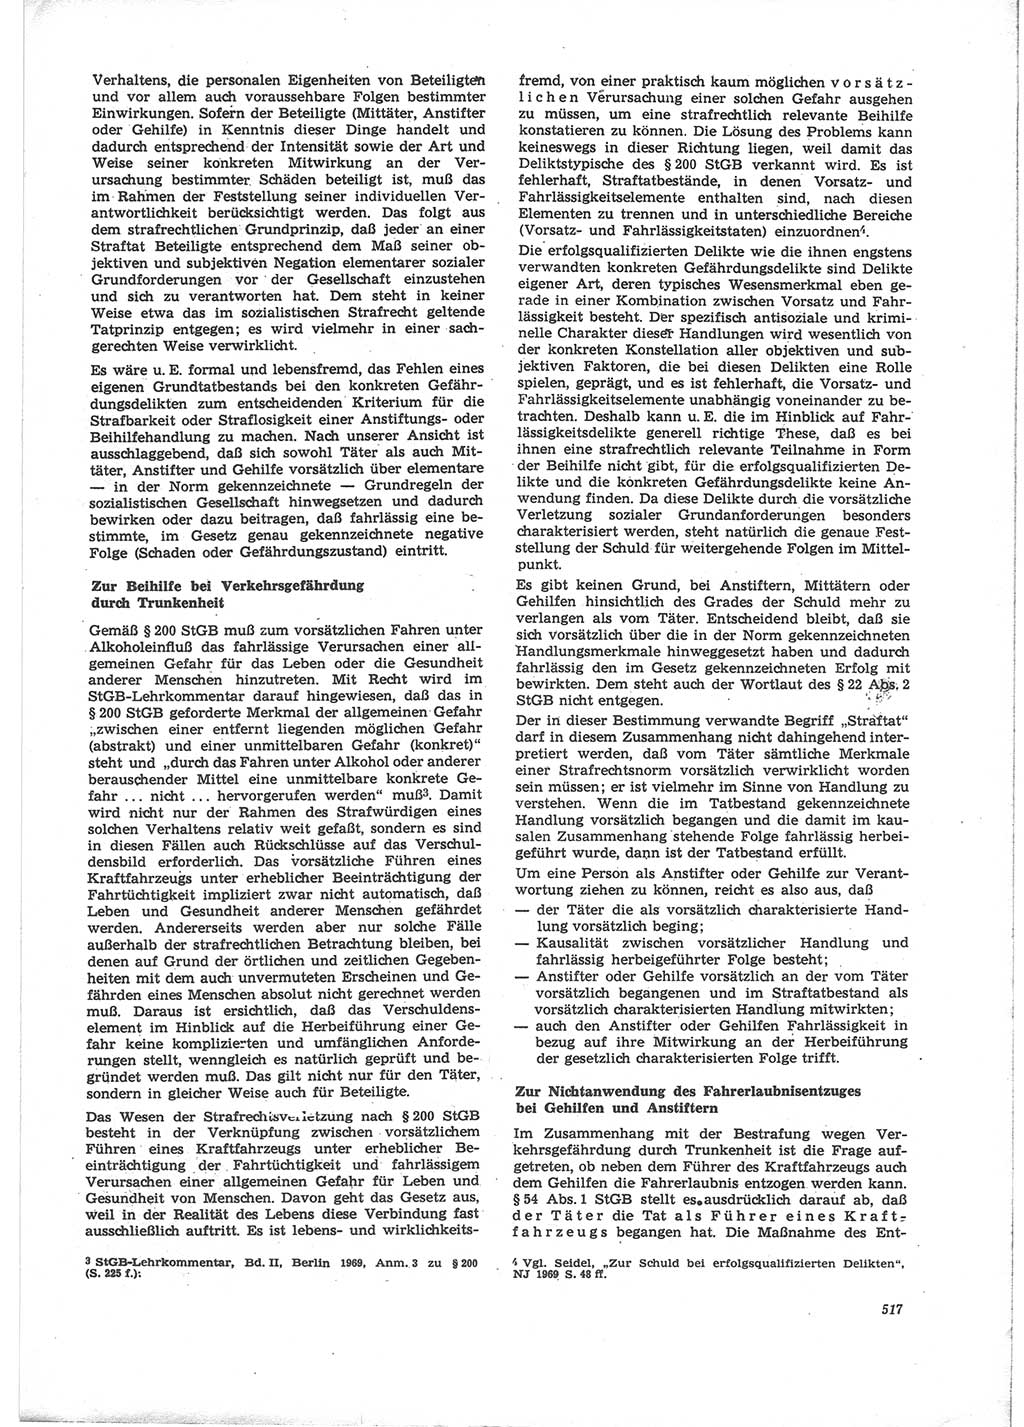 Neue Justiz (NJ), Zeitschrift für Recht und Rechtswissenschaft [Deutsche Demokratische Republik (DDR)], 24. Jahrgang 1970, Seite 517 (NJ DDR 1970, S. 517)